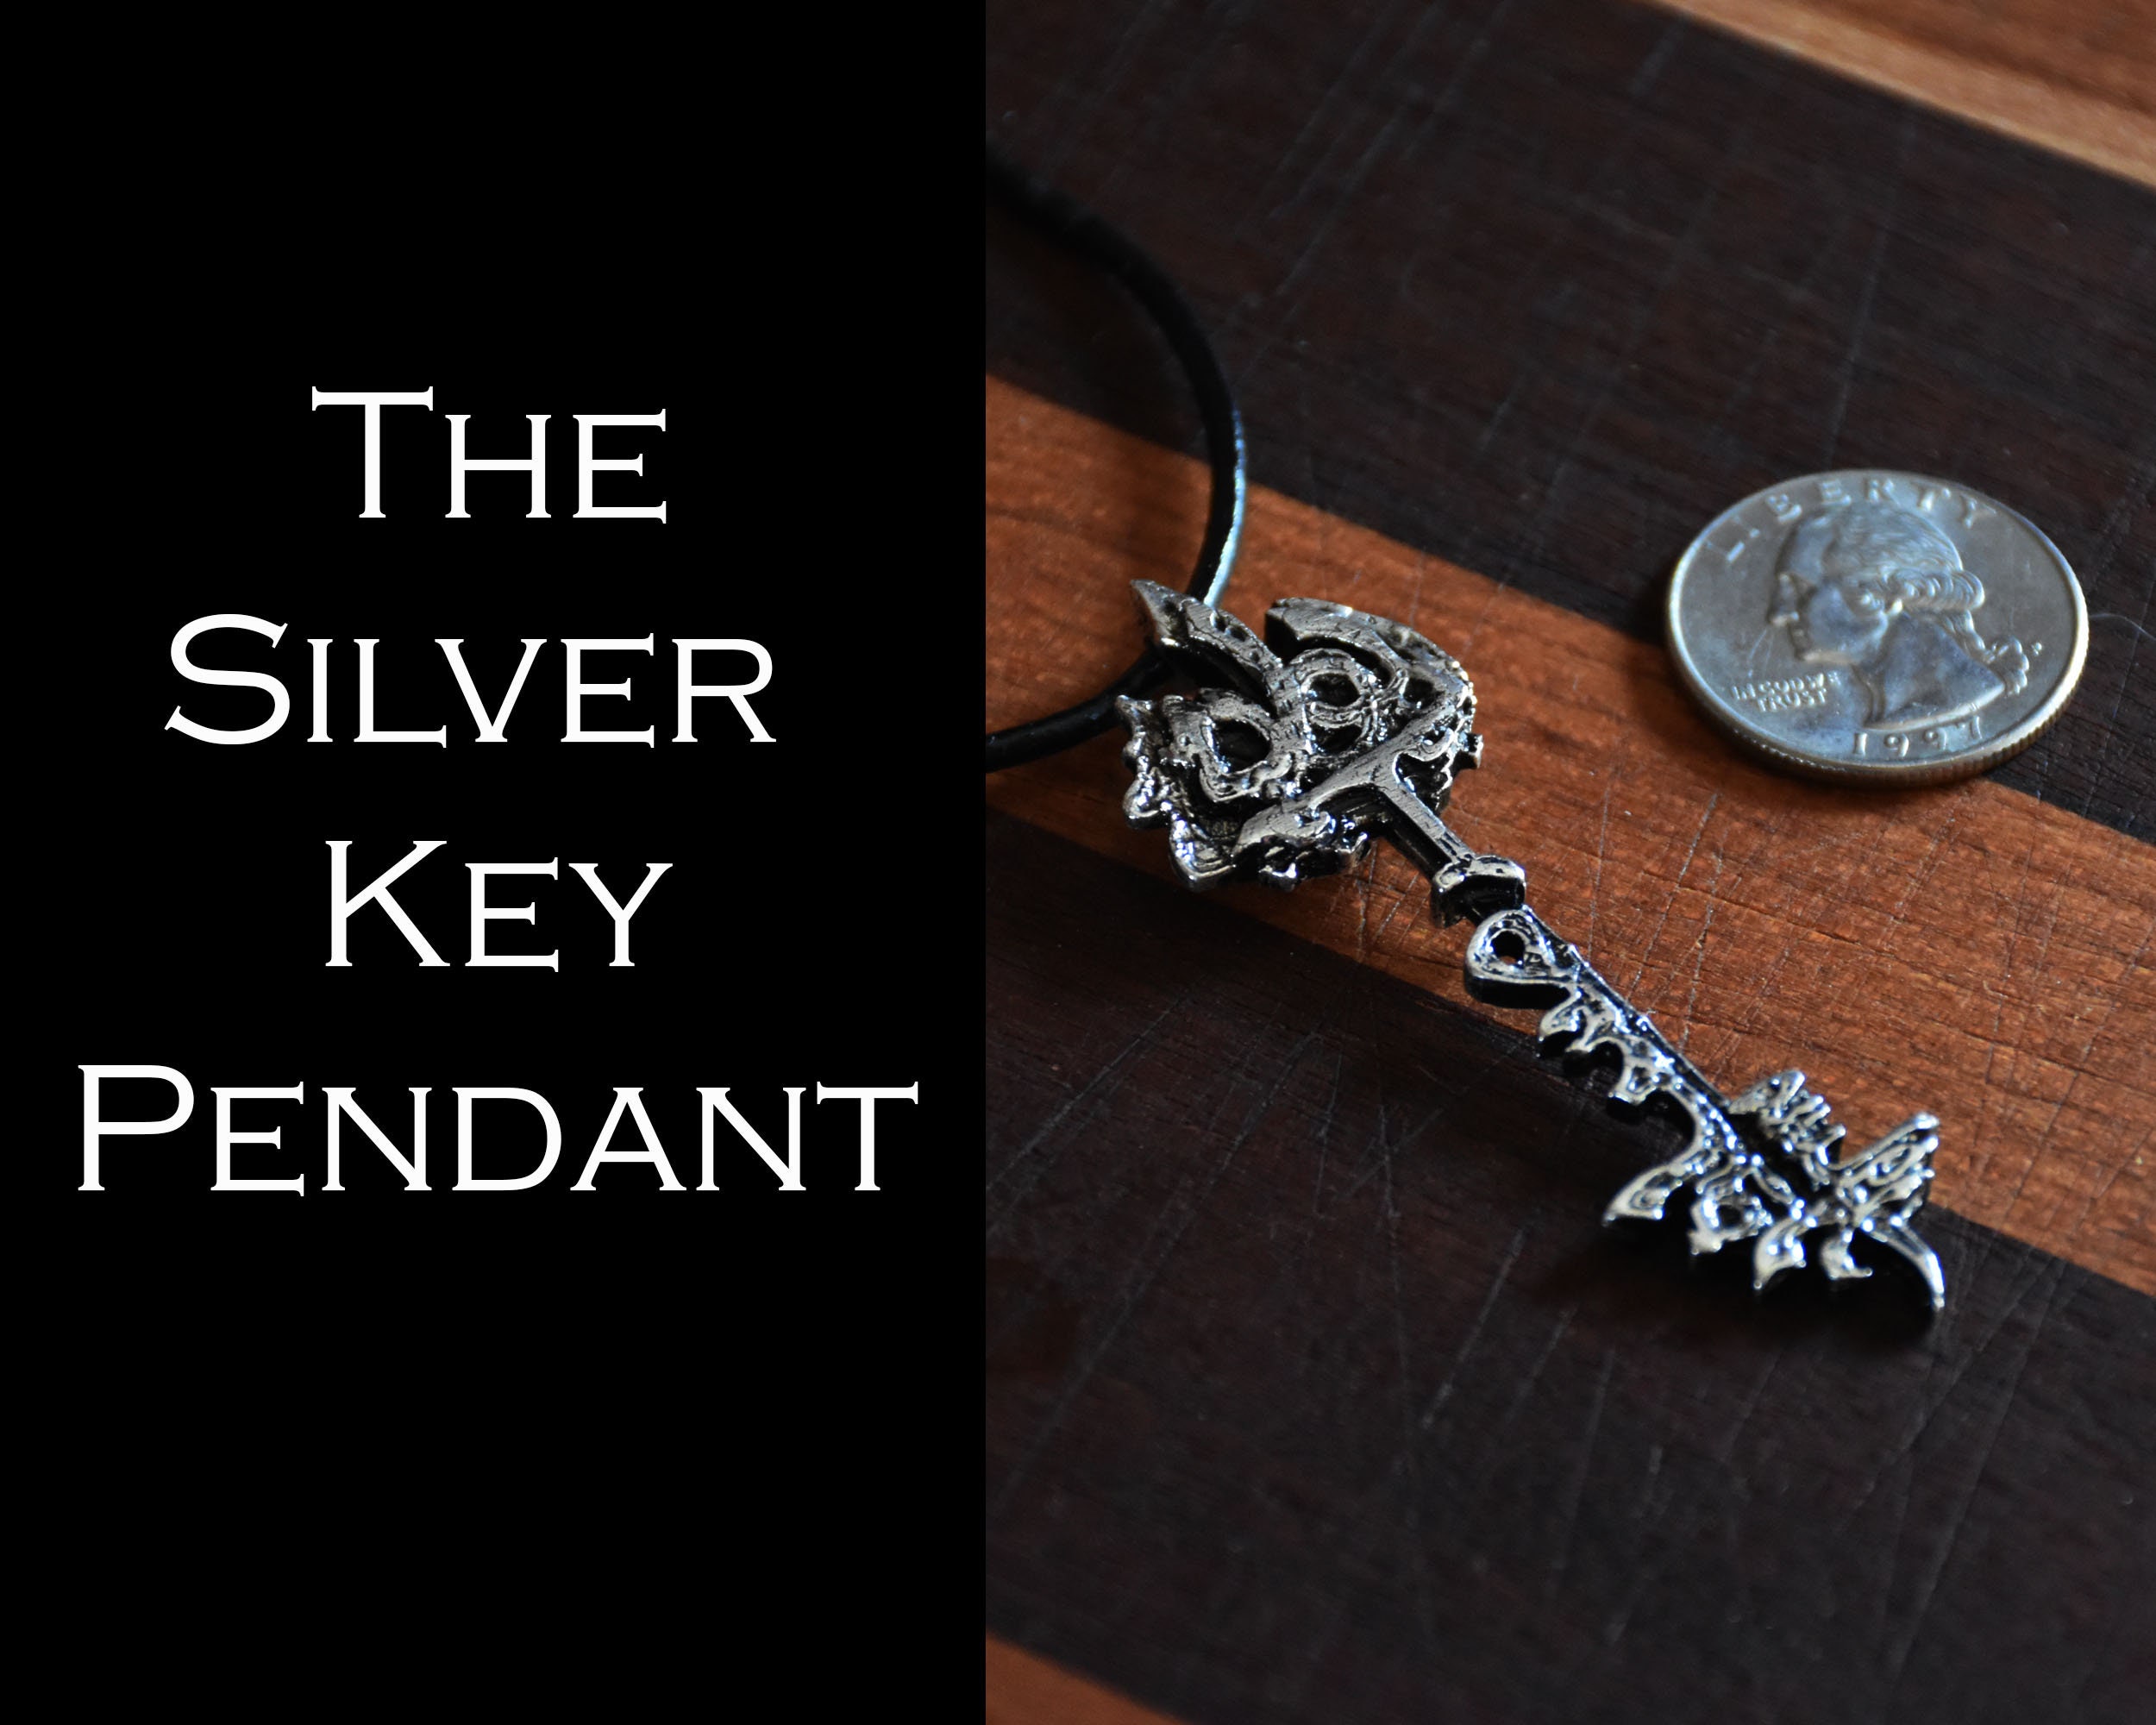 Tiny Key Necklace - Tiny Sterling Silver Heart Key Necklace - Key Charm - Little Key Necklace - Tiny Heart Key Pendant - Sterling Key Charm